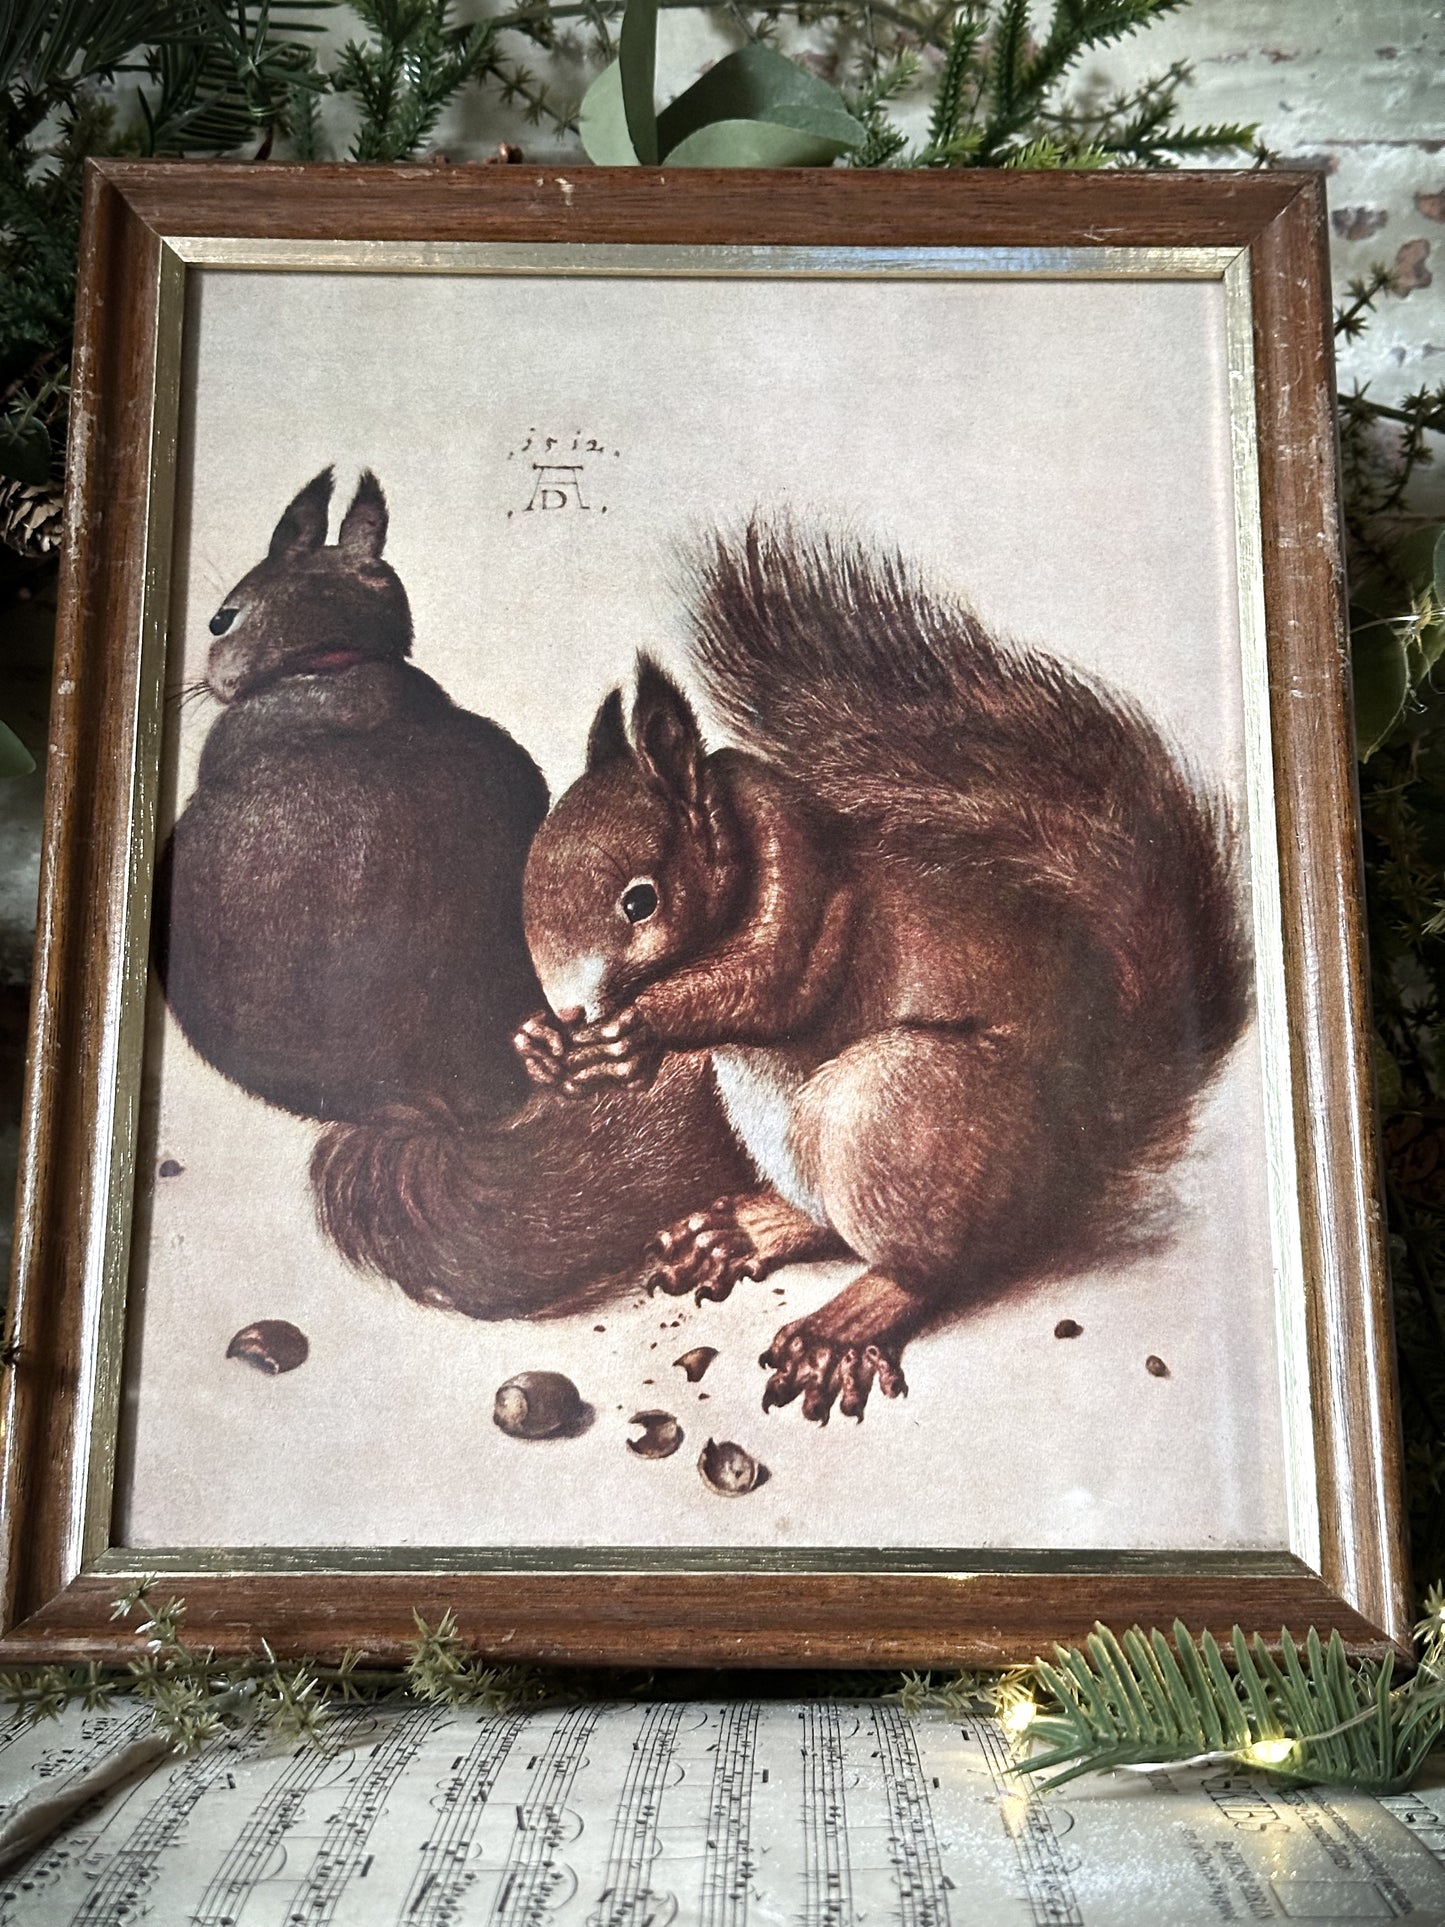 A Rare Vintage Framed Albrecht Durer Print of Squirrels